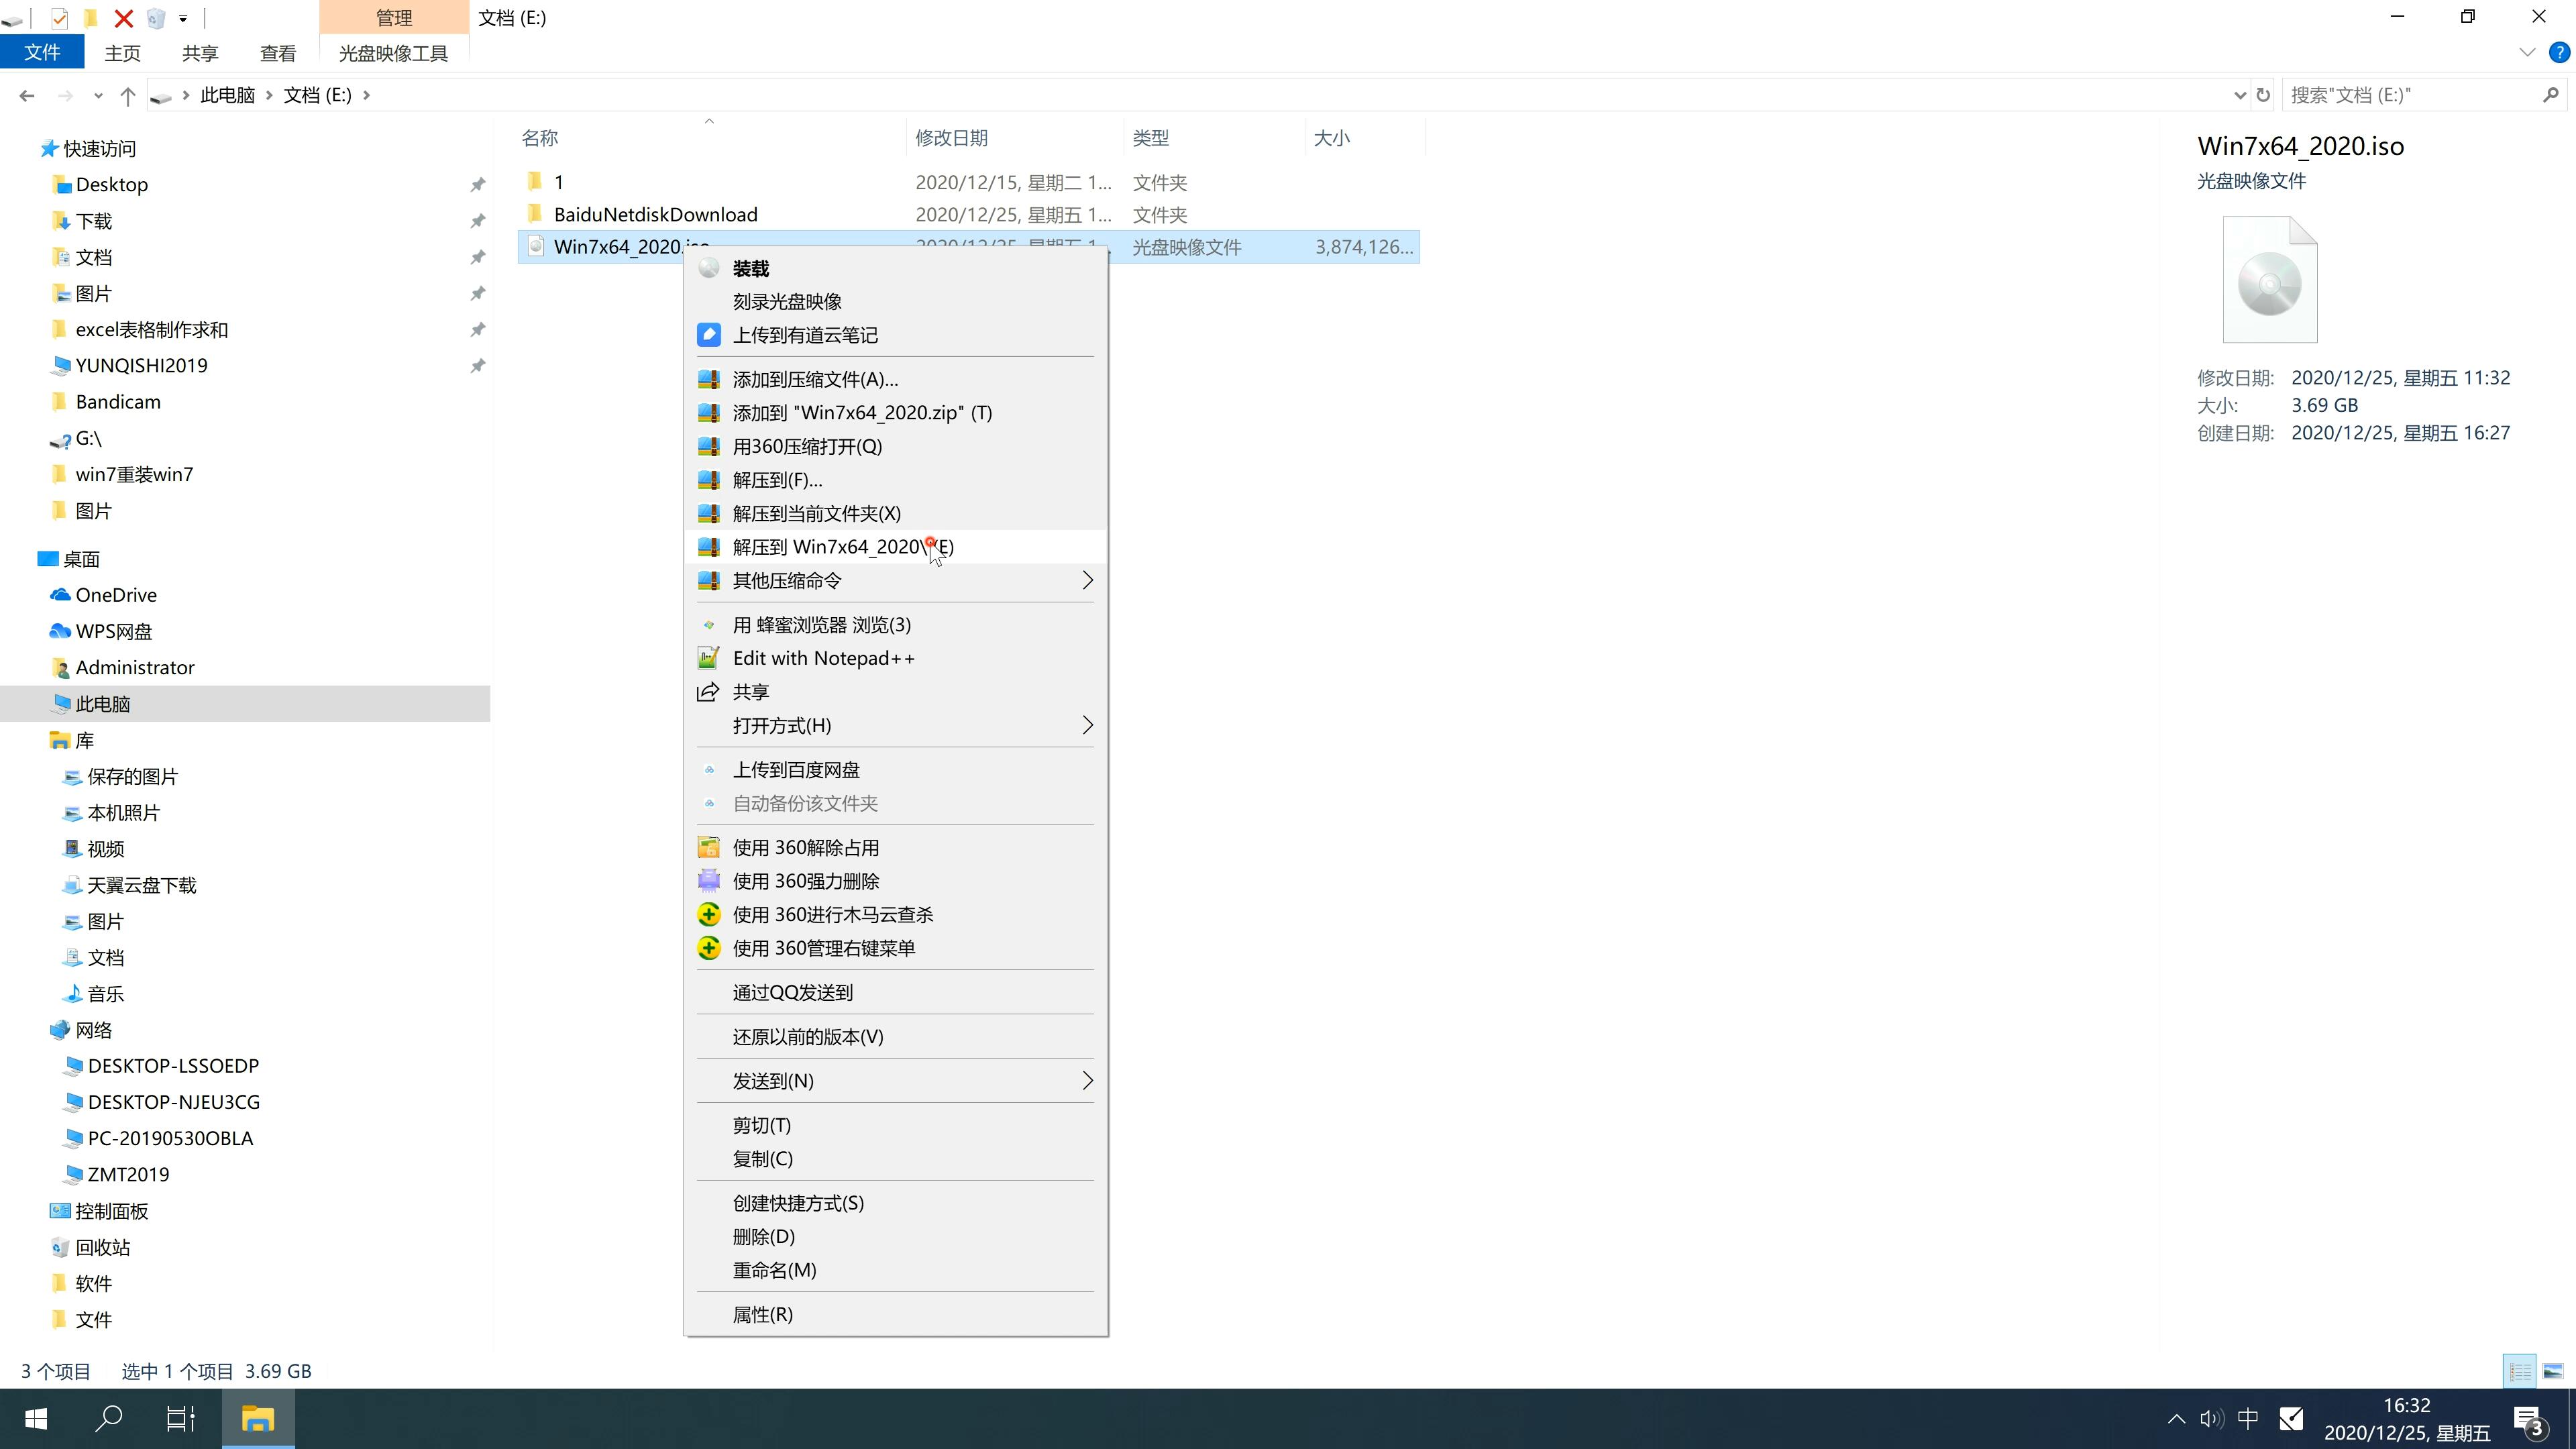 新版系统之家系统 GHOST windows7 64 SP1 完整安装版 V2022.11(2)